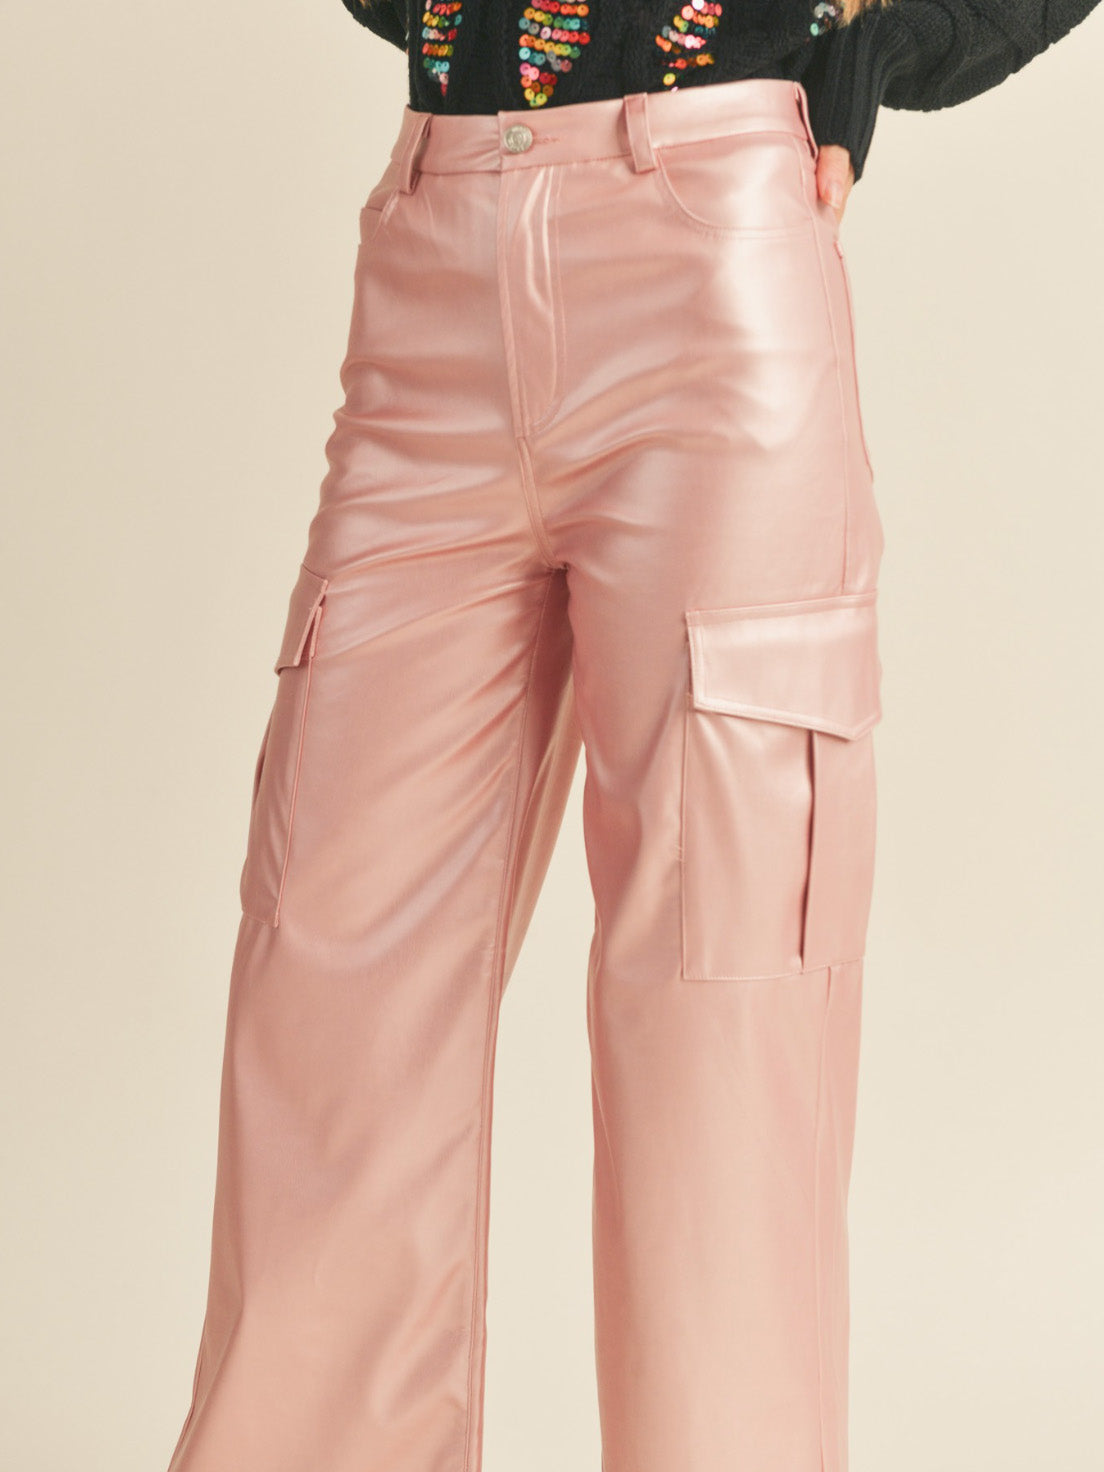 rose metallic cargo pants